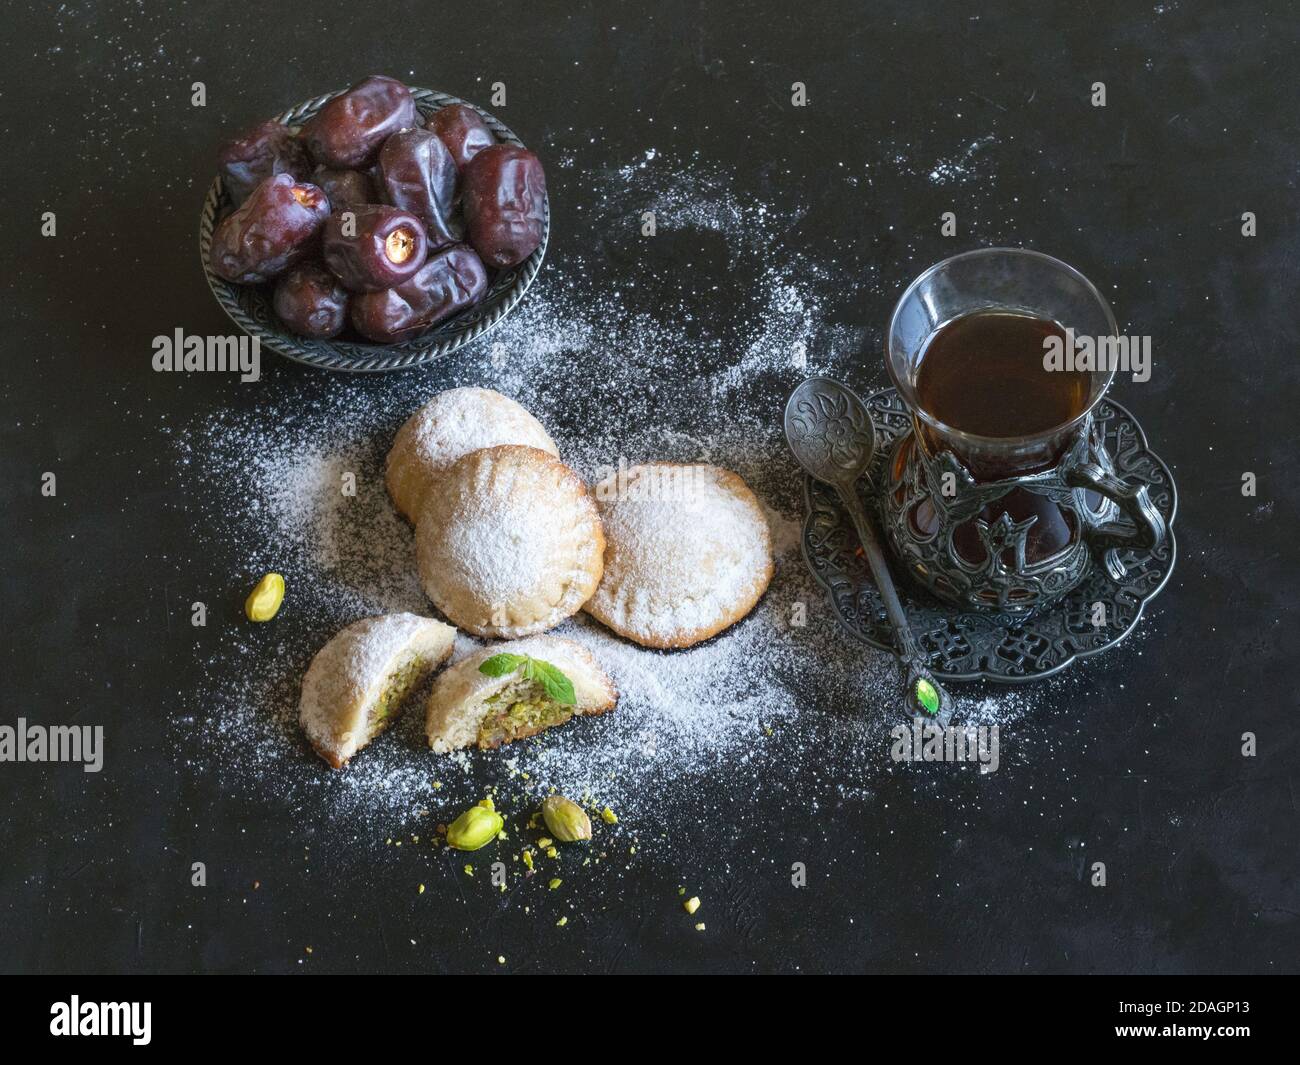 Biscuits égyptiens 'Kahk El Eid' avec dates et tasse de thé servis dans une table noire. Biscuits de la fête islamique El Fitr. Banque D'Images